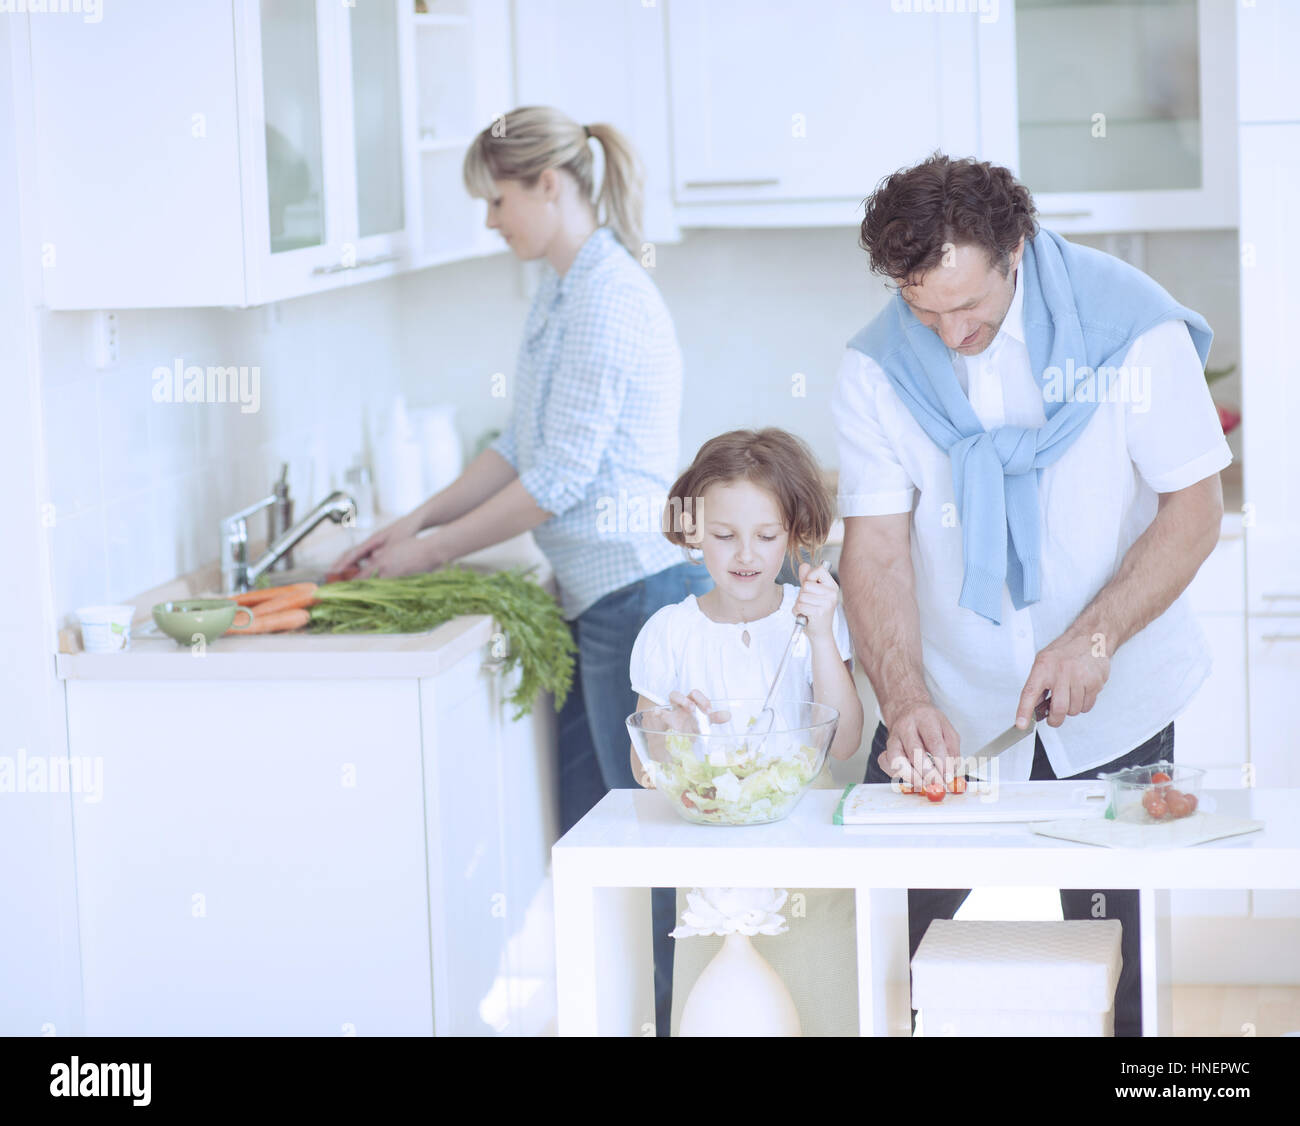 La préparation familiale repas sain dans la cuisine Banque D'Images